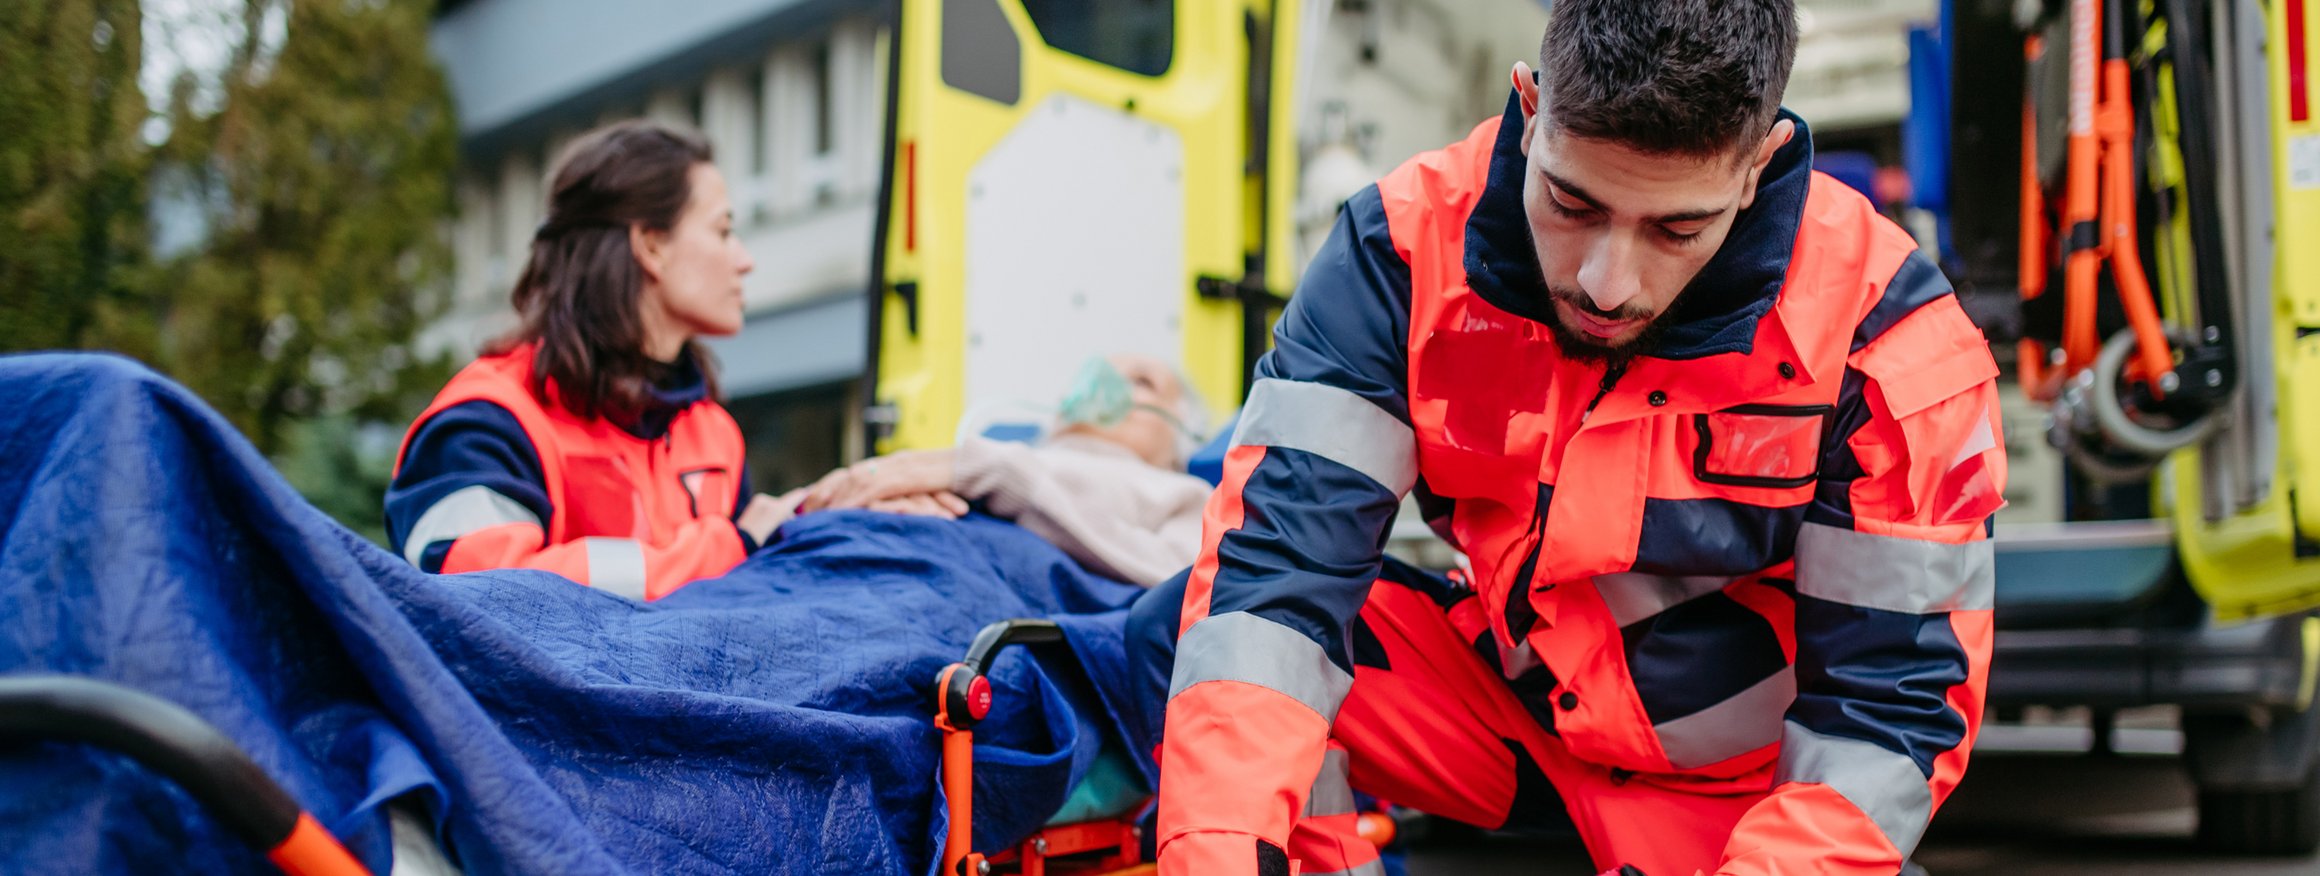 Eine Sanitäterin und ein Sanitäter versorgen eine verletzte Person auf einer Liege, während dahinter der Krankenwagen steht, bereit zum Krankentransport